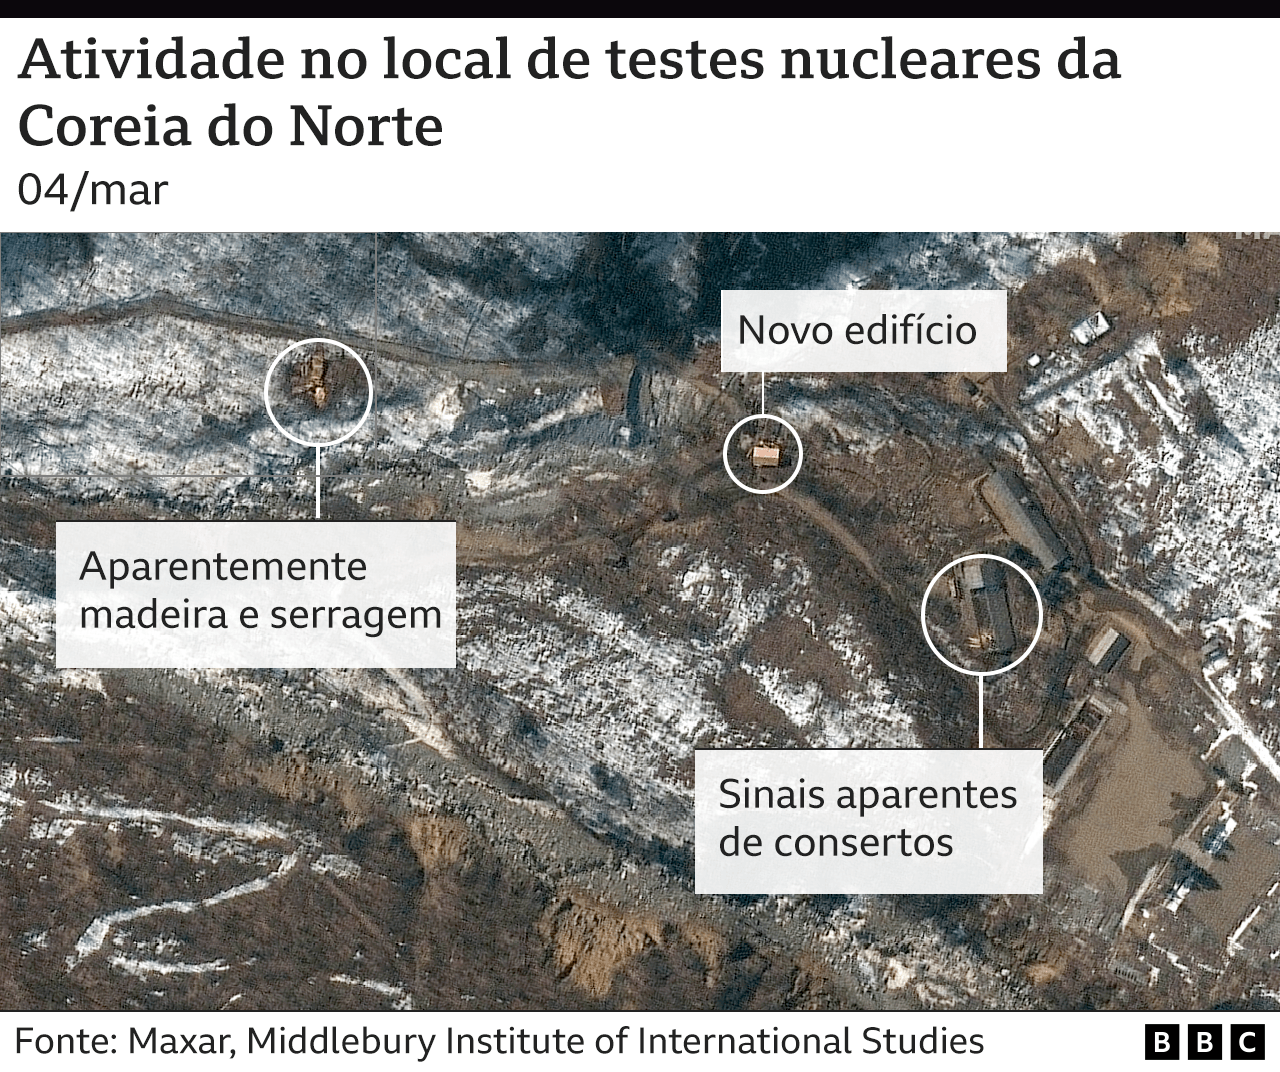 Foto de satélite mostra atividade em local de testes nucleares